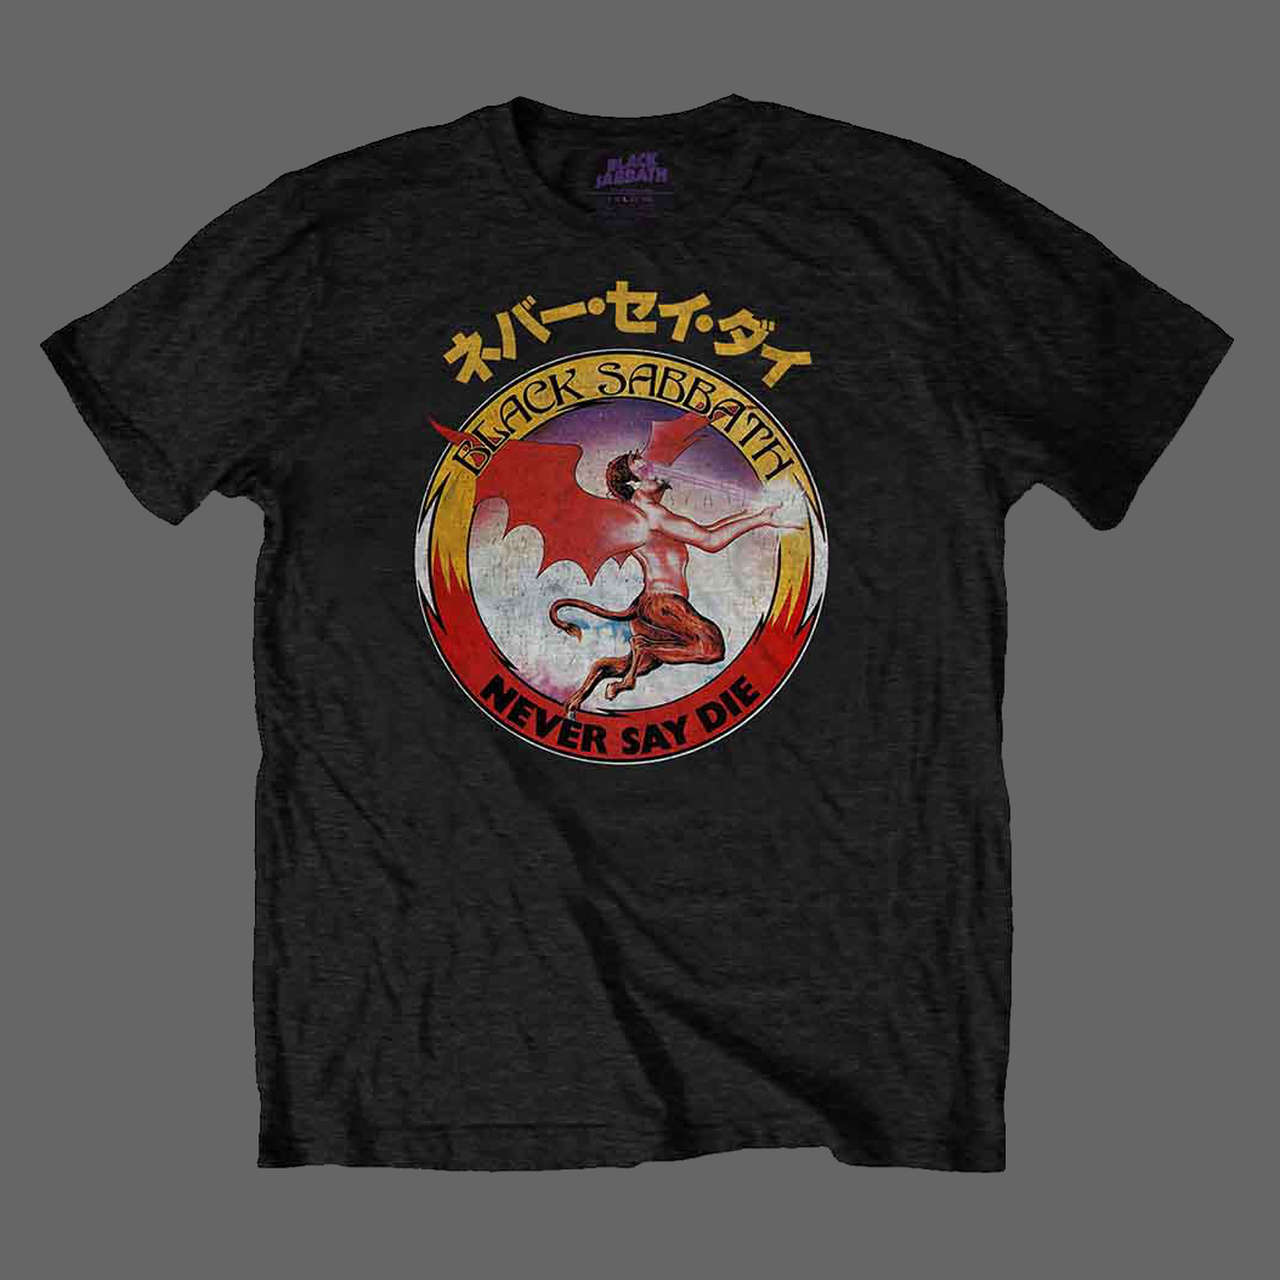 Black Sabbath - Never Say Die (Japanese) (T-Shirt)